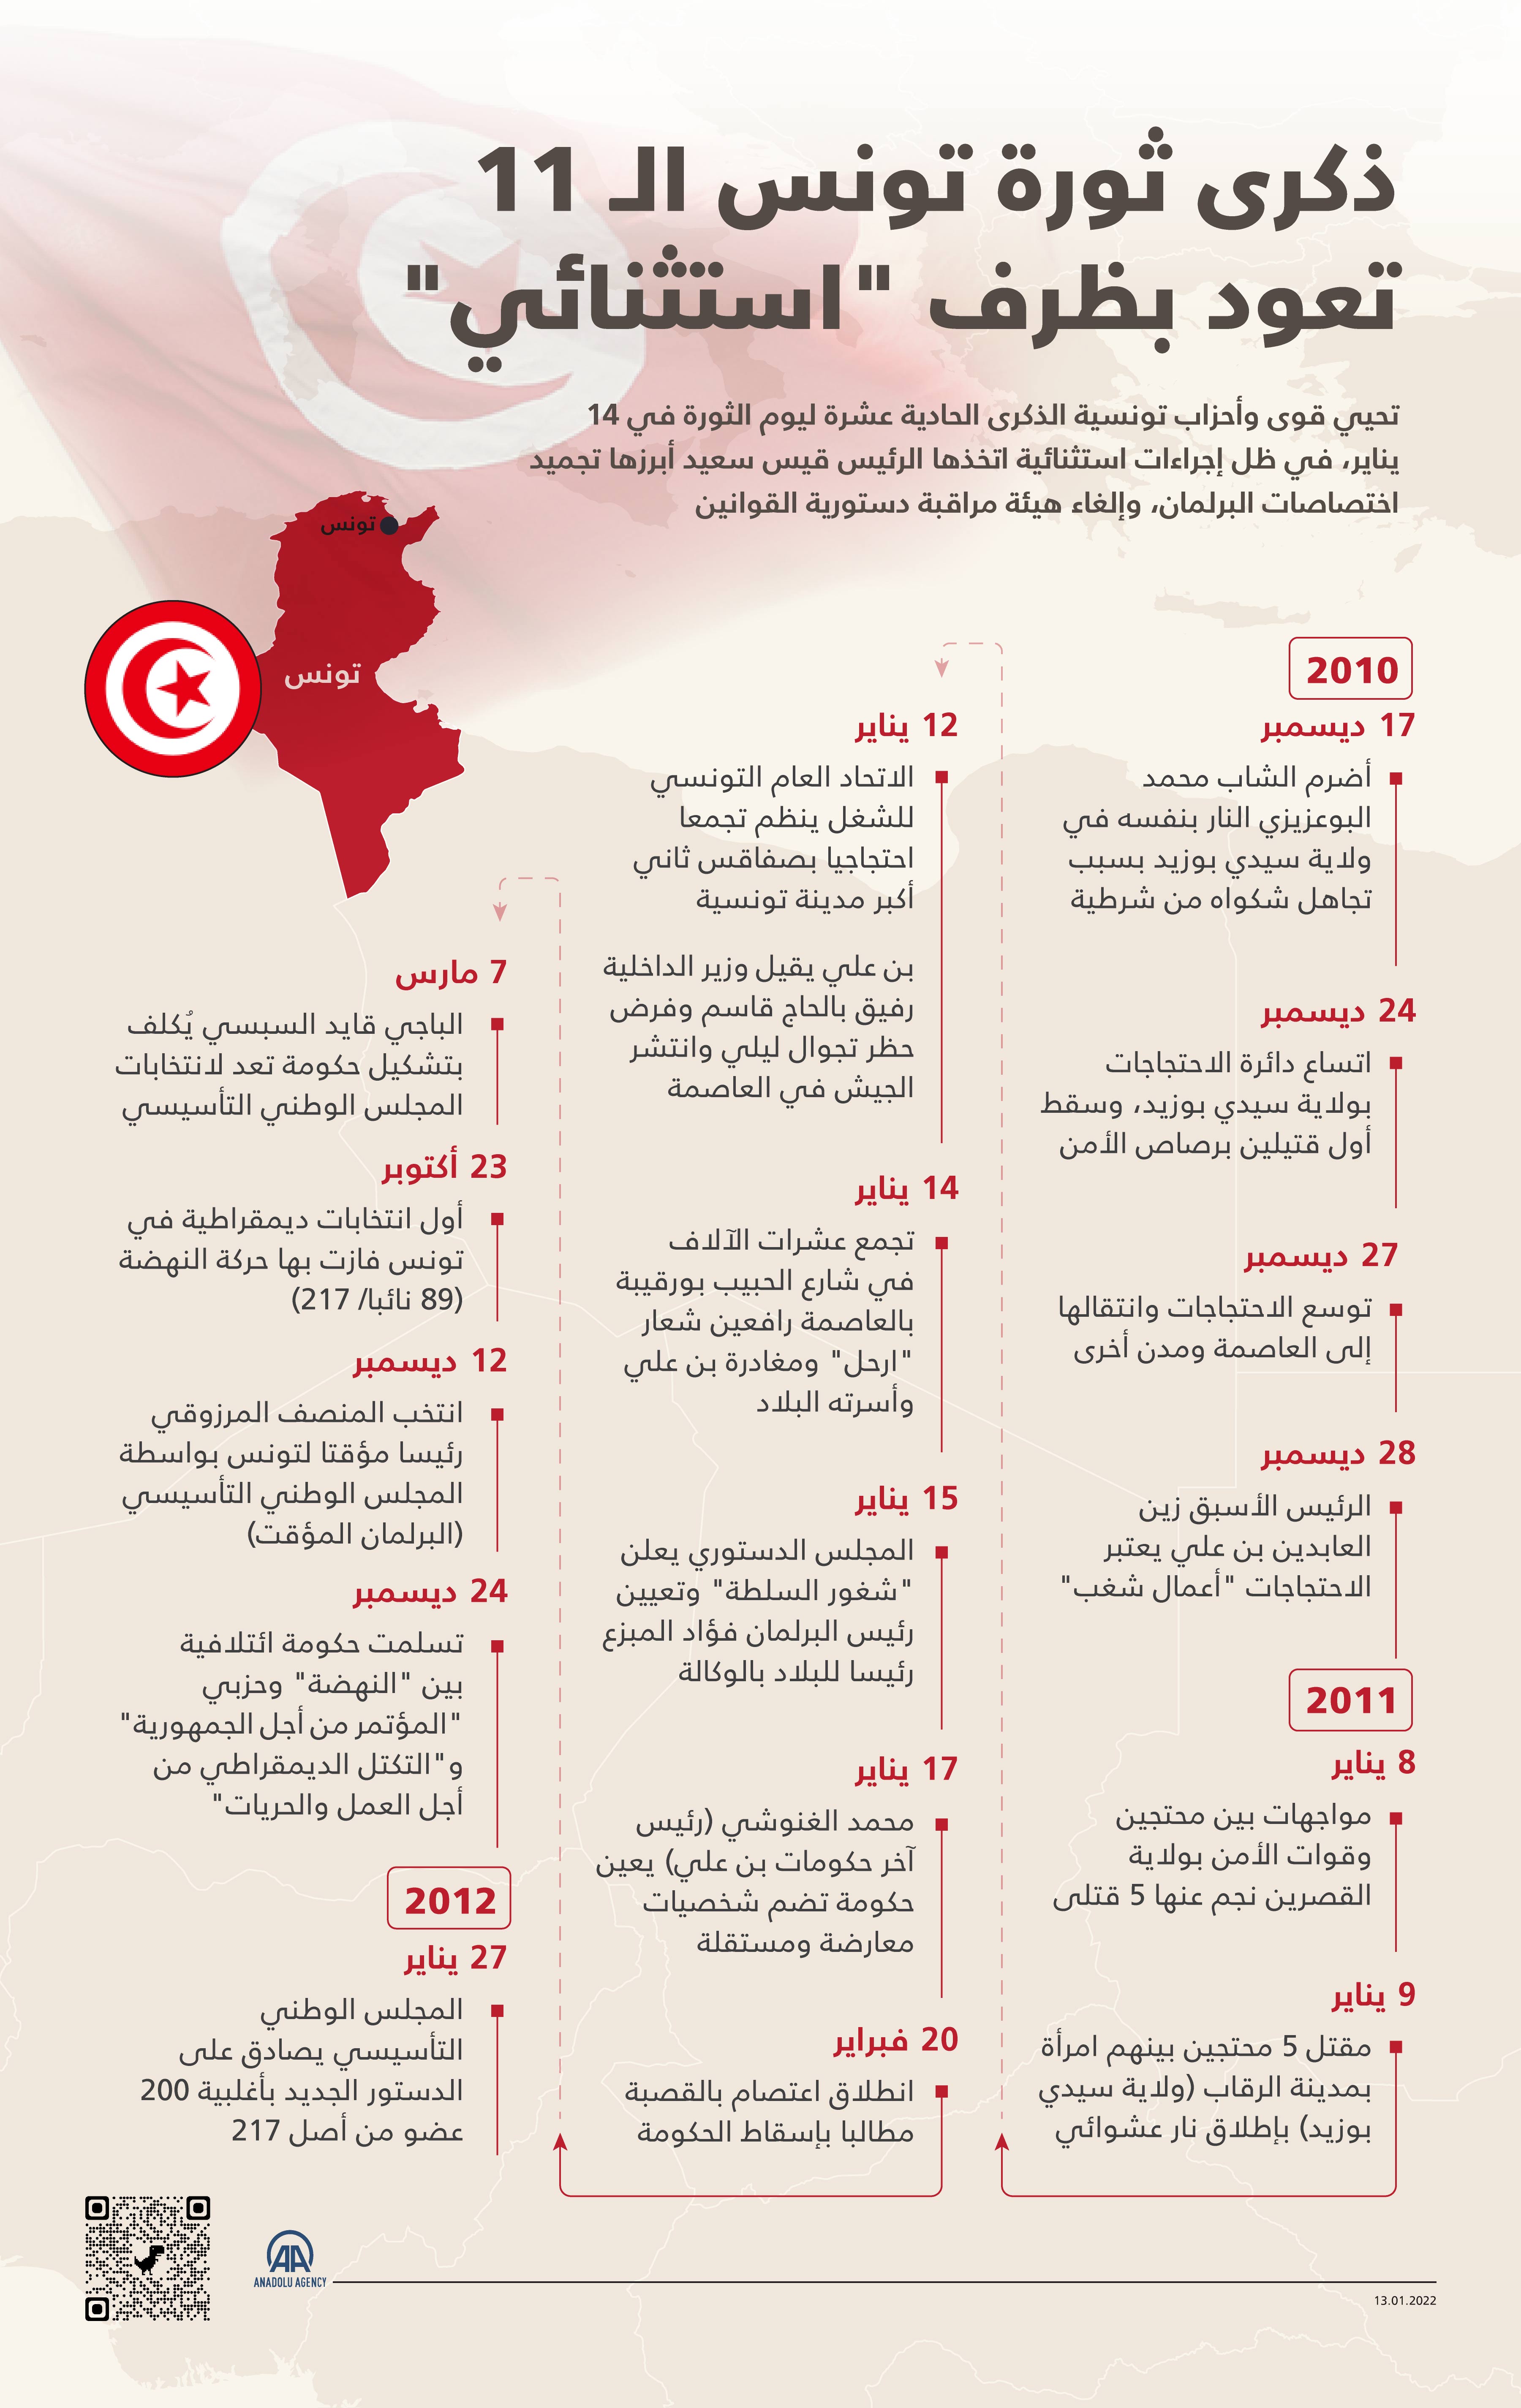 تحيي قوى وأحزاب تونسية الذكرى الحادية عشرة ليوم الثورة في 14 يناير، في ظل إجراءات استثنائية اتخذها الرئيس قيس سعيد أبرزها تجميد اختصاصات البرلمان، وإلغاء هيئة مراقبة دستورية القوانين.